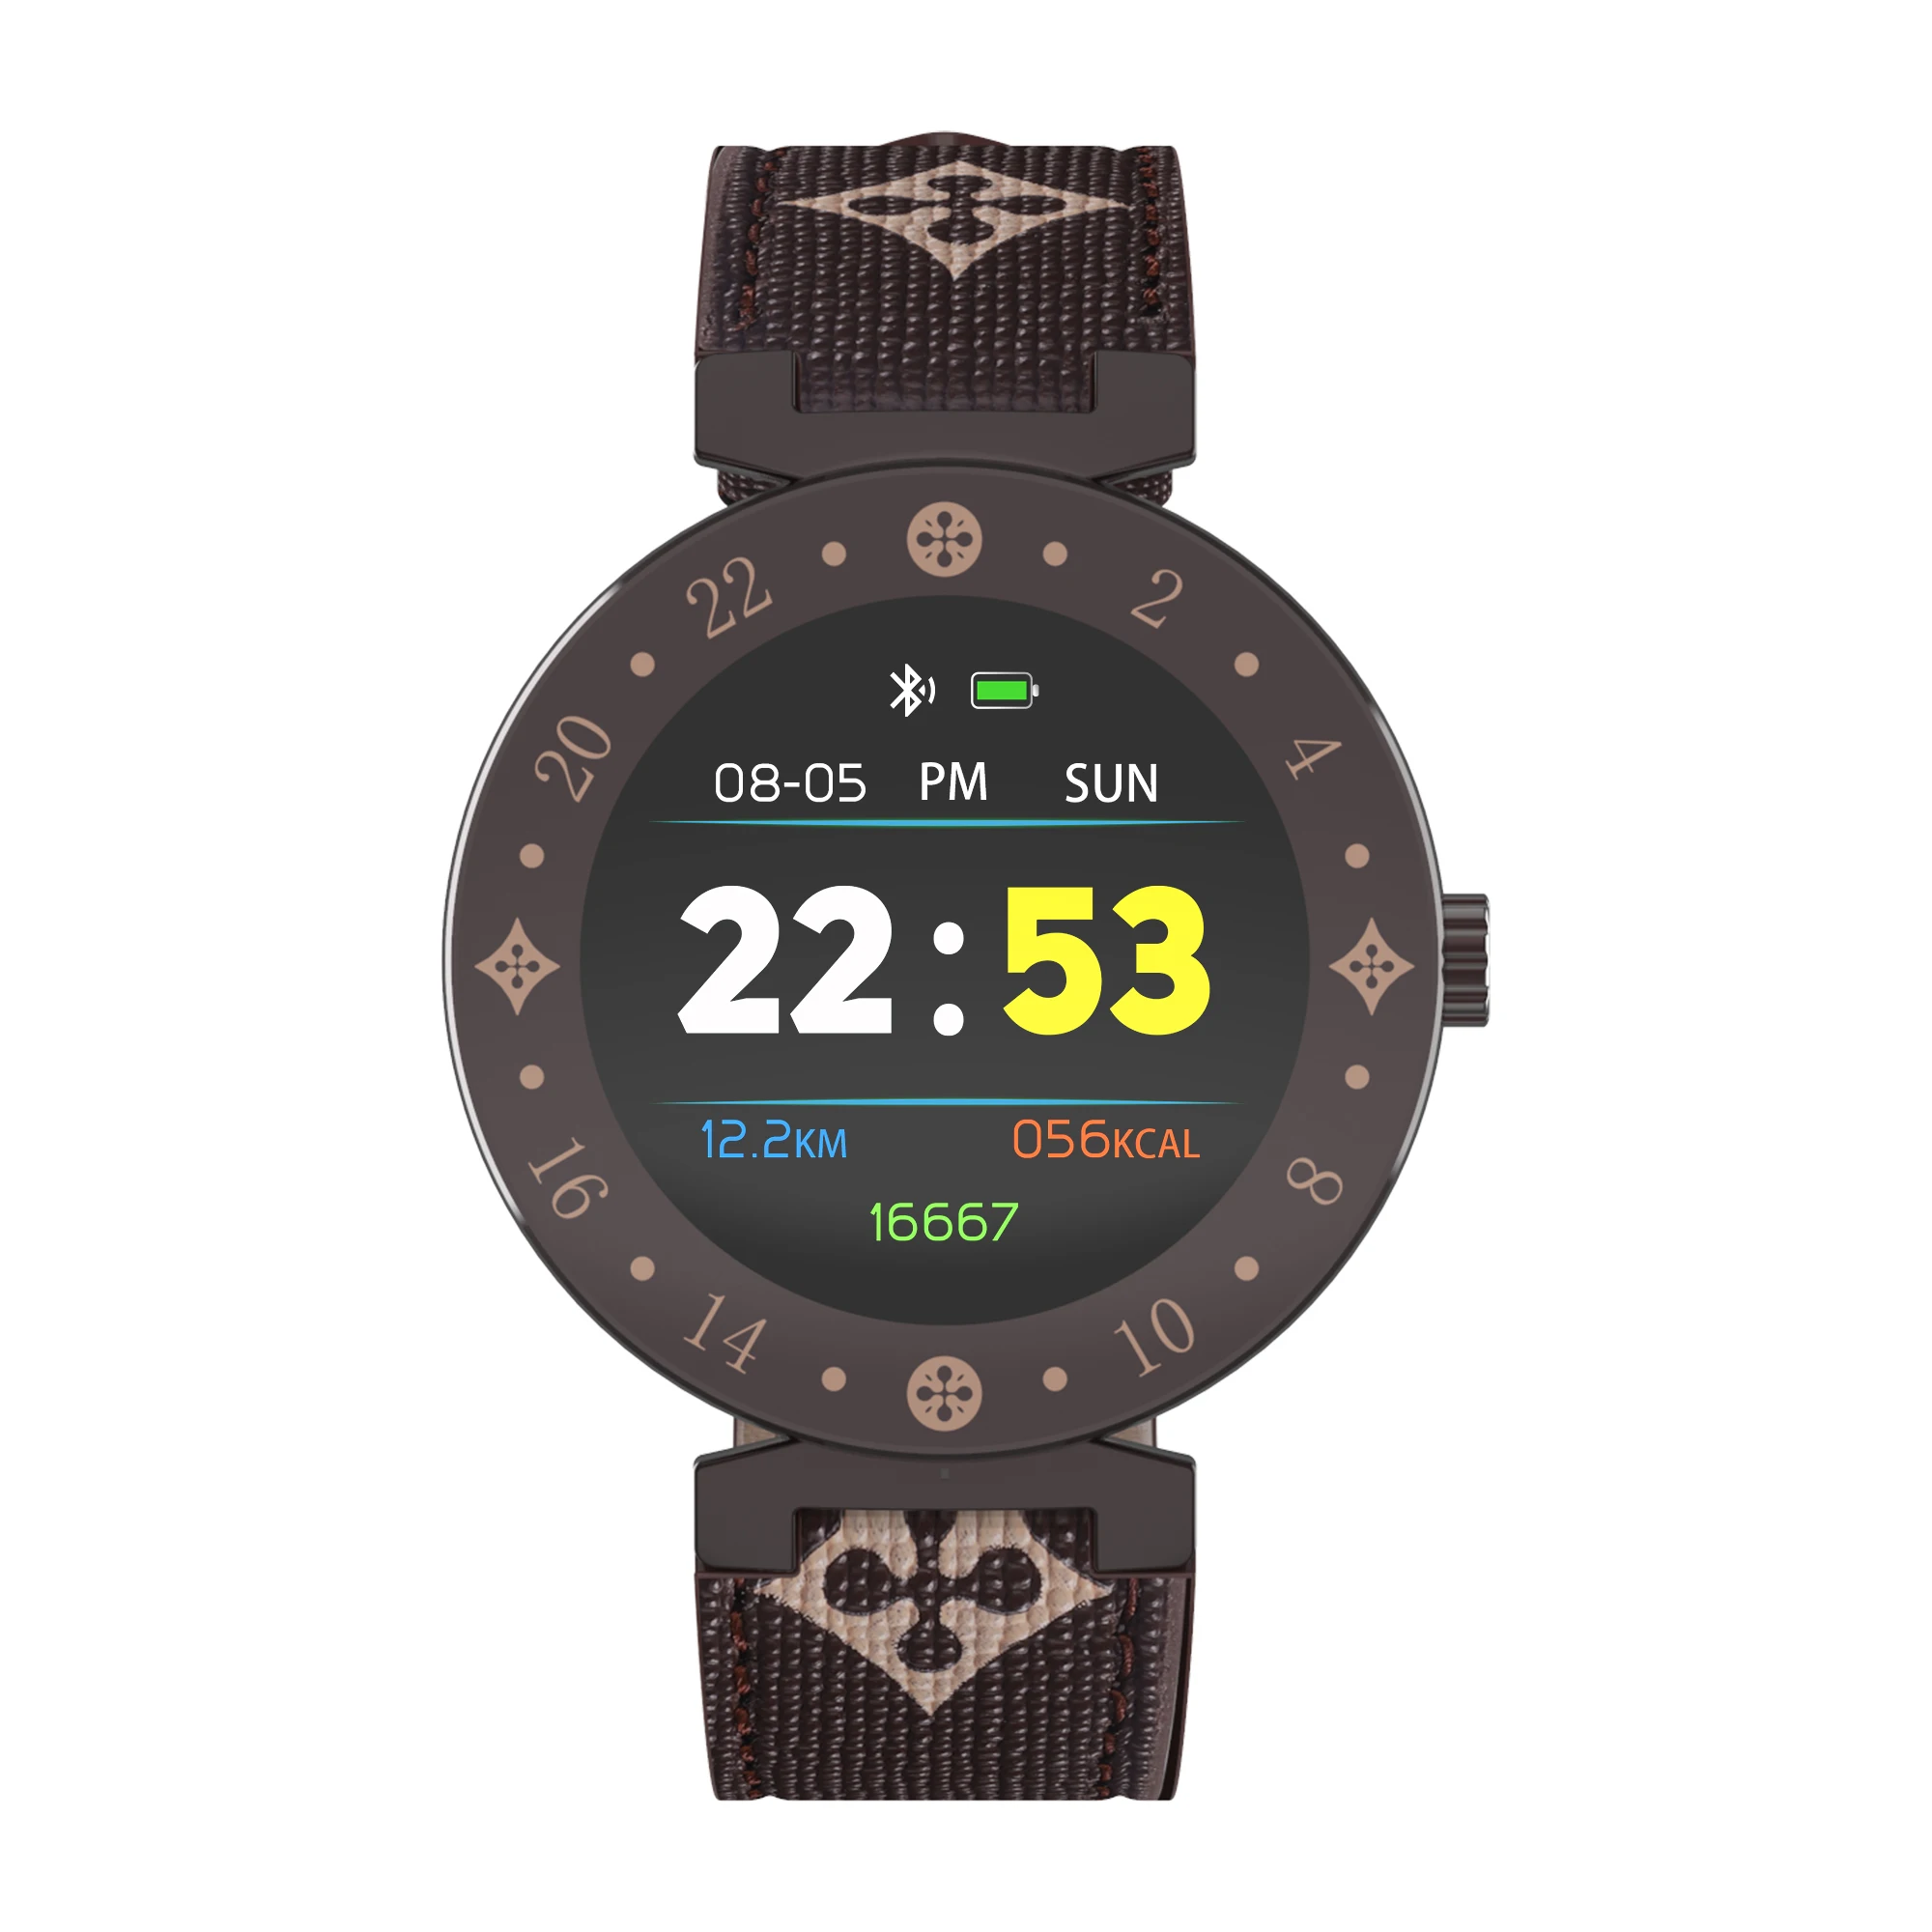 KYCXD smart watch Hd сенсорный экран Смарт-браслет с функциями измерения пульса и артериального давления контрольную таблицу фитнес-браслет для мужчин и женщин - Цвет: Коричневый